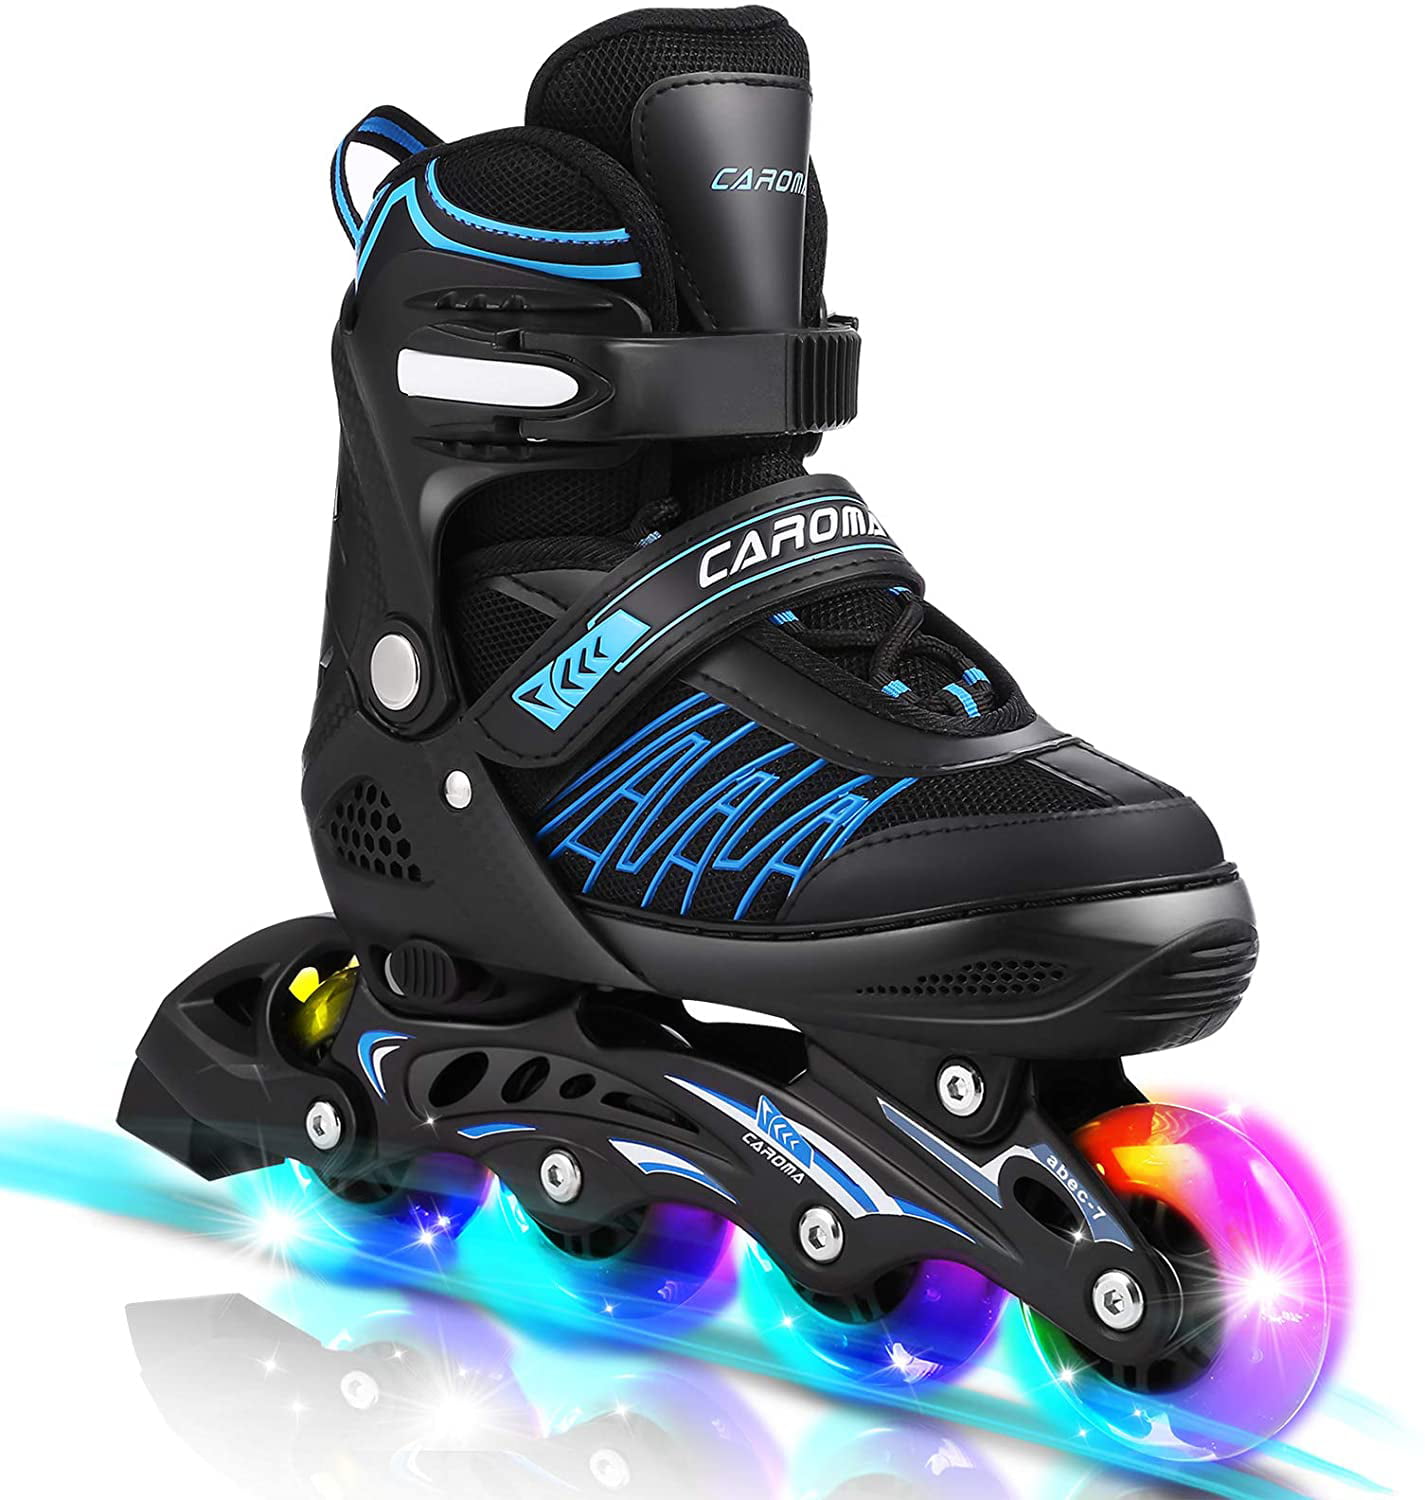 SK8 Zone Boys Blue Roller Blades Inline Skates Adjustable Size Childrens Kids Pro Skating New